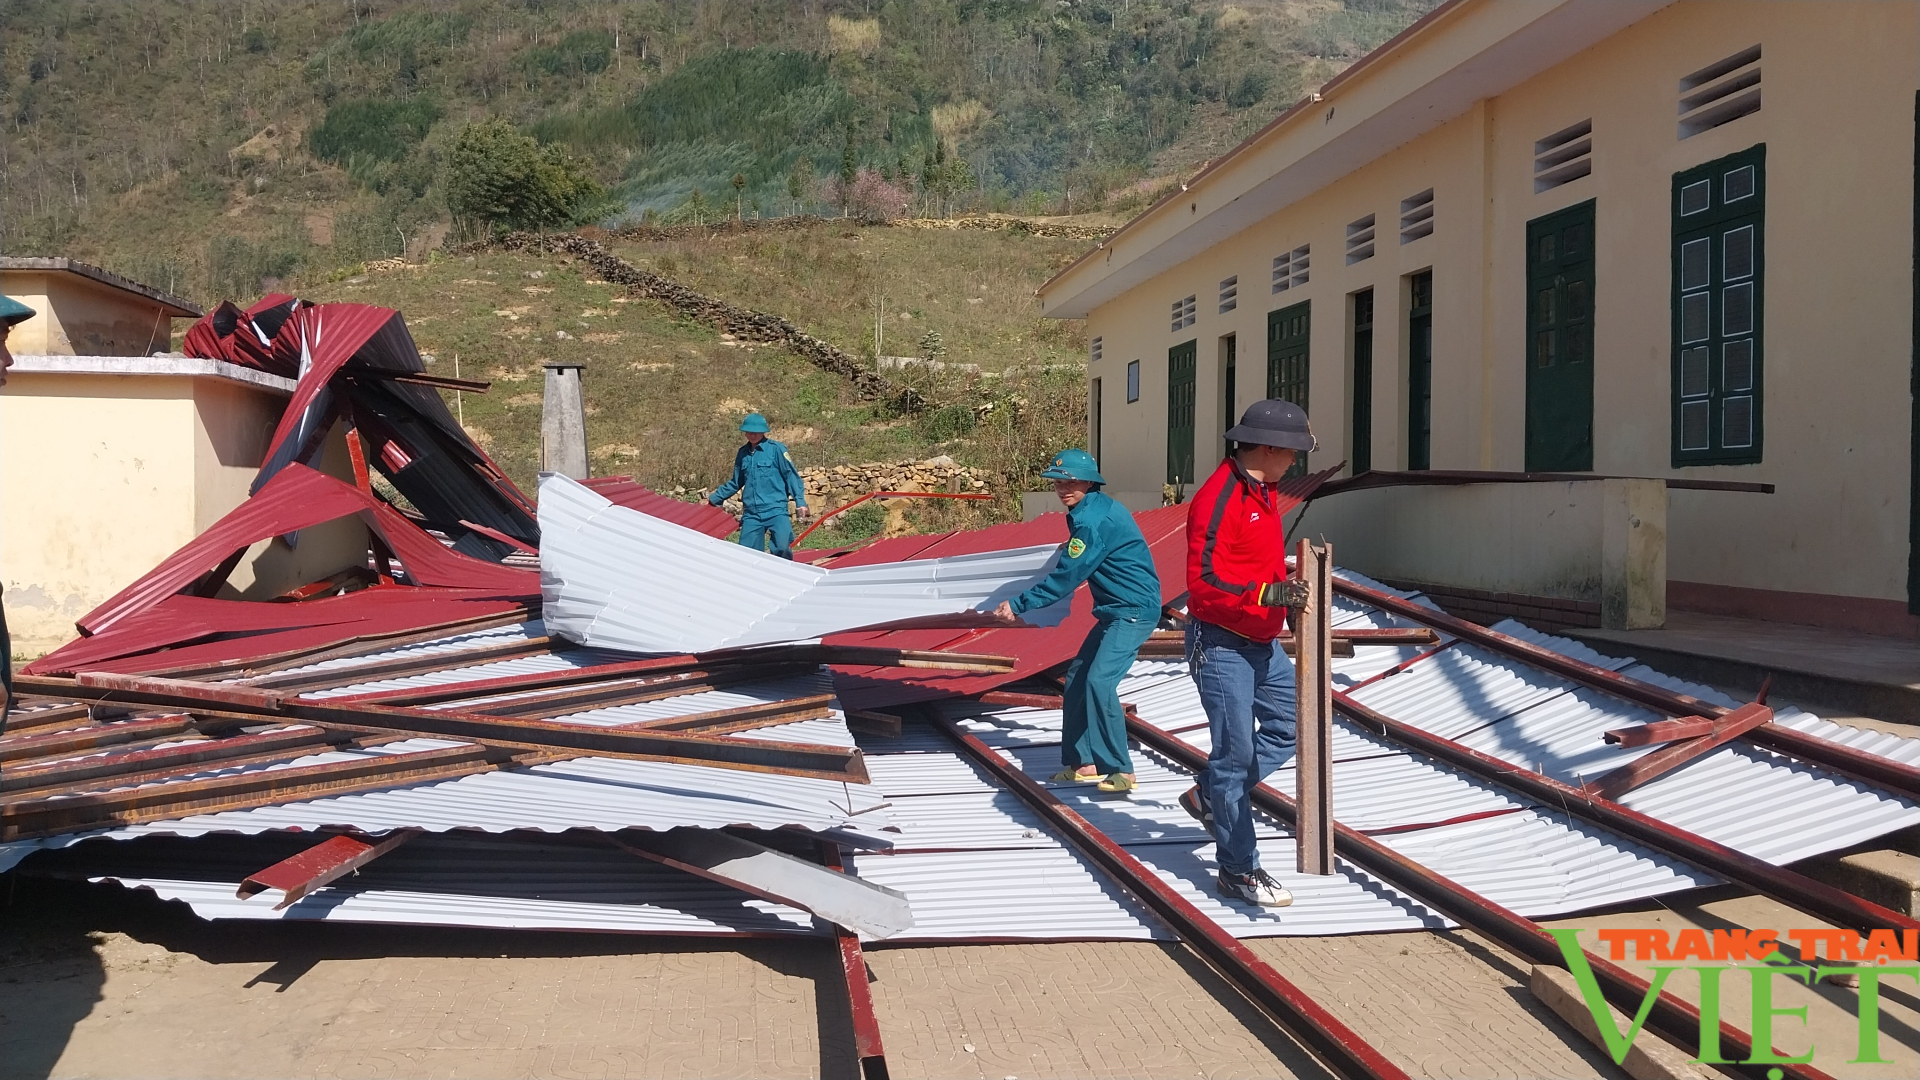 Gió lốc gây thiệt hại nhà cửa, trường học tại Sa Pa - Ảnh 5.